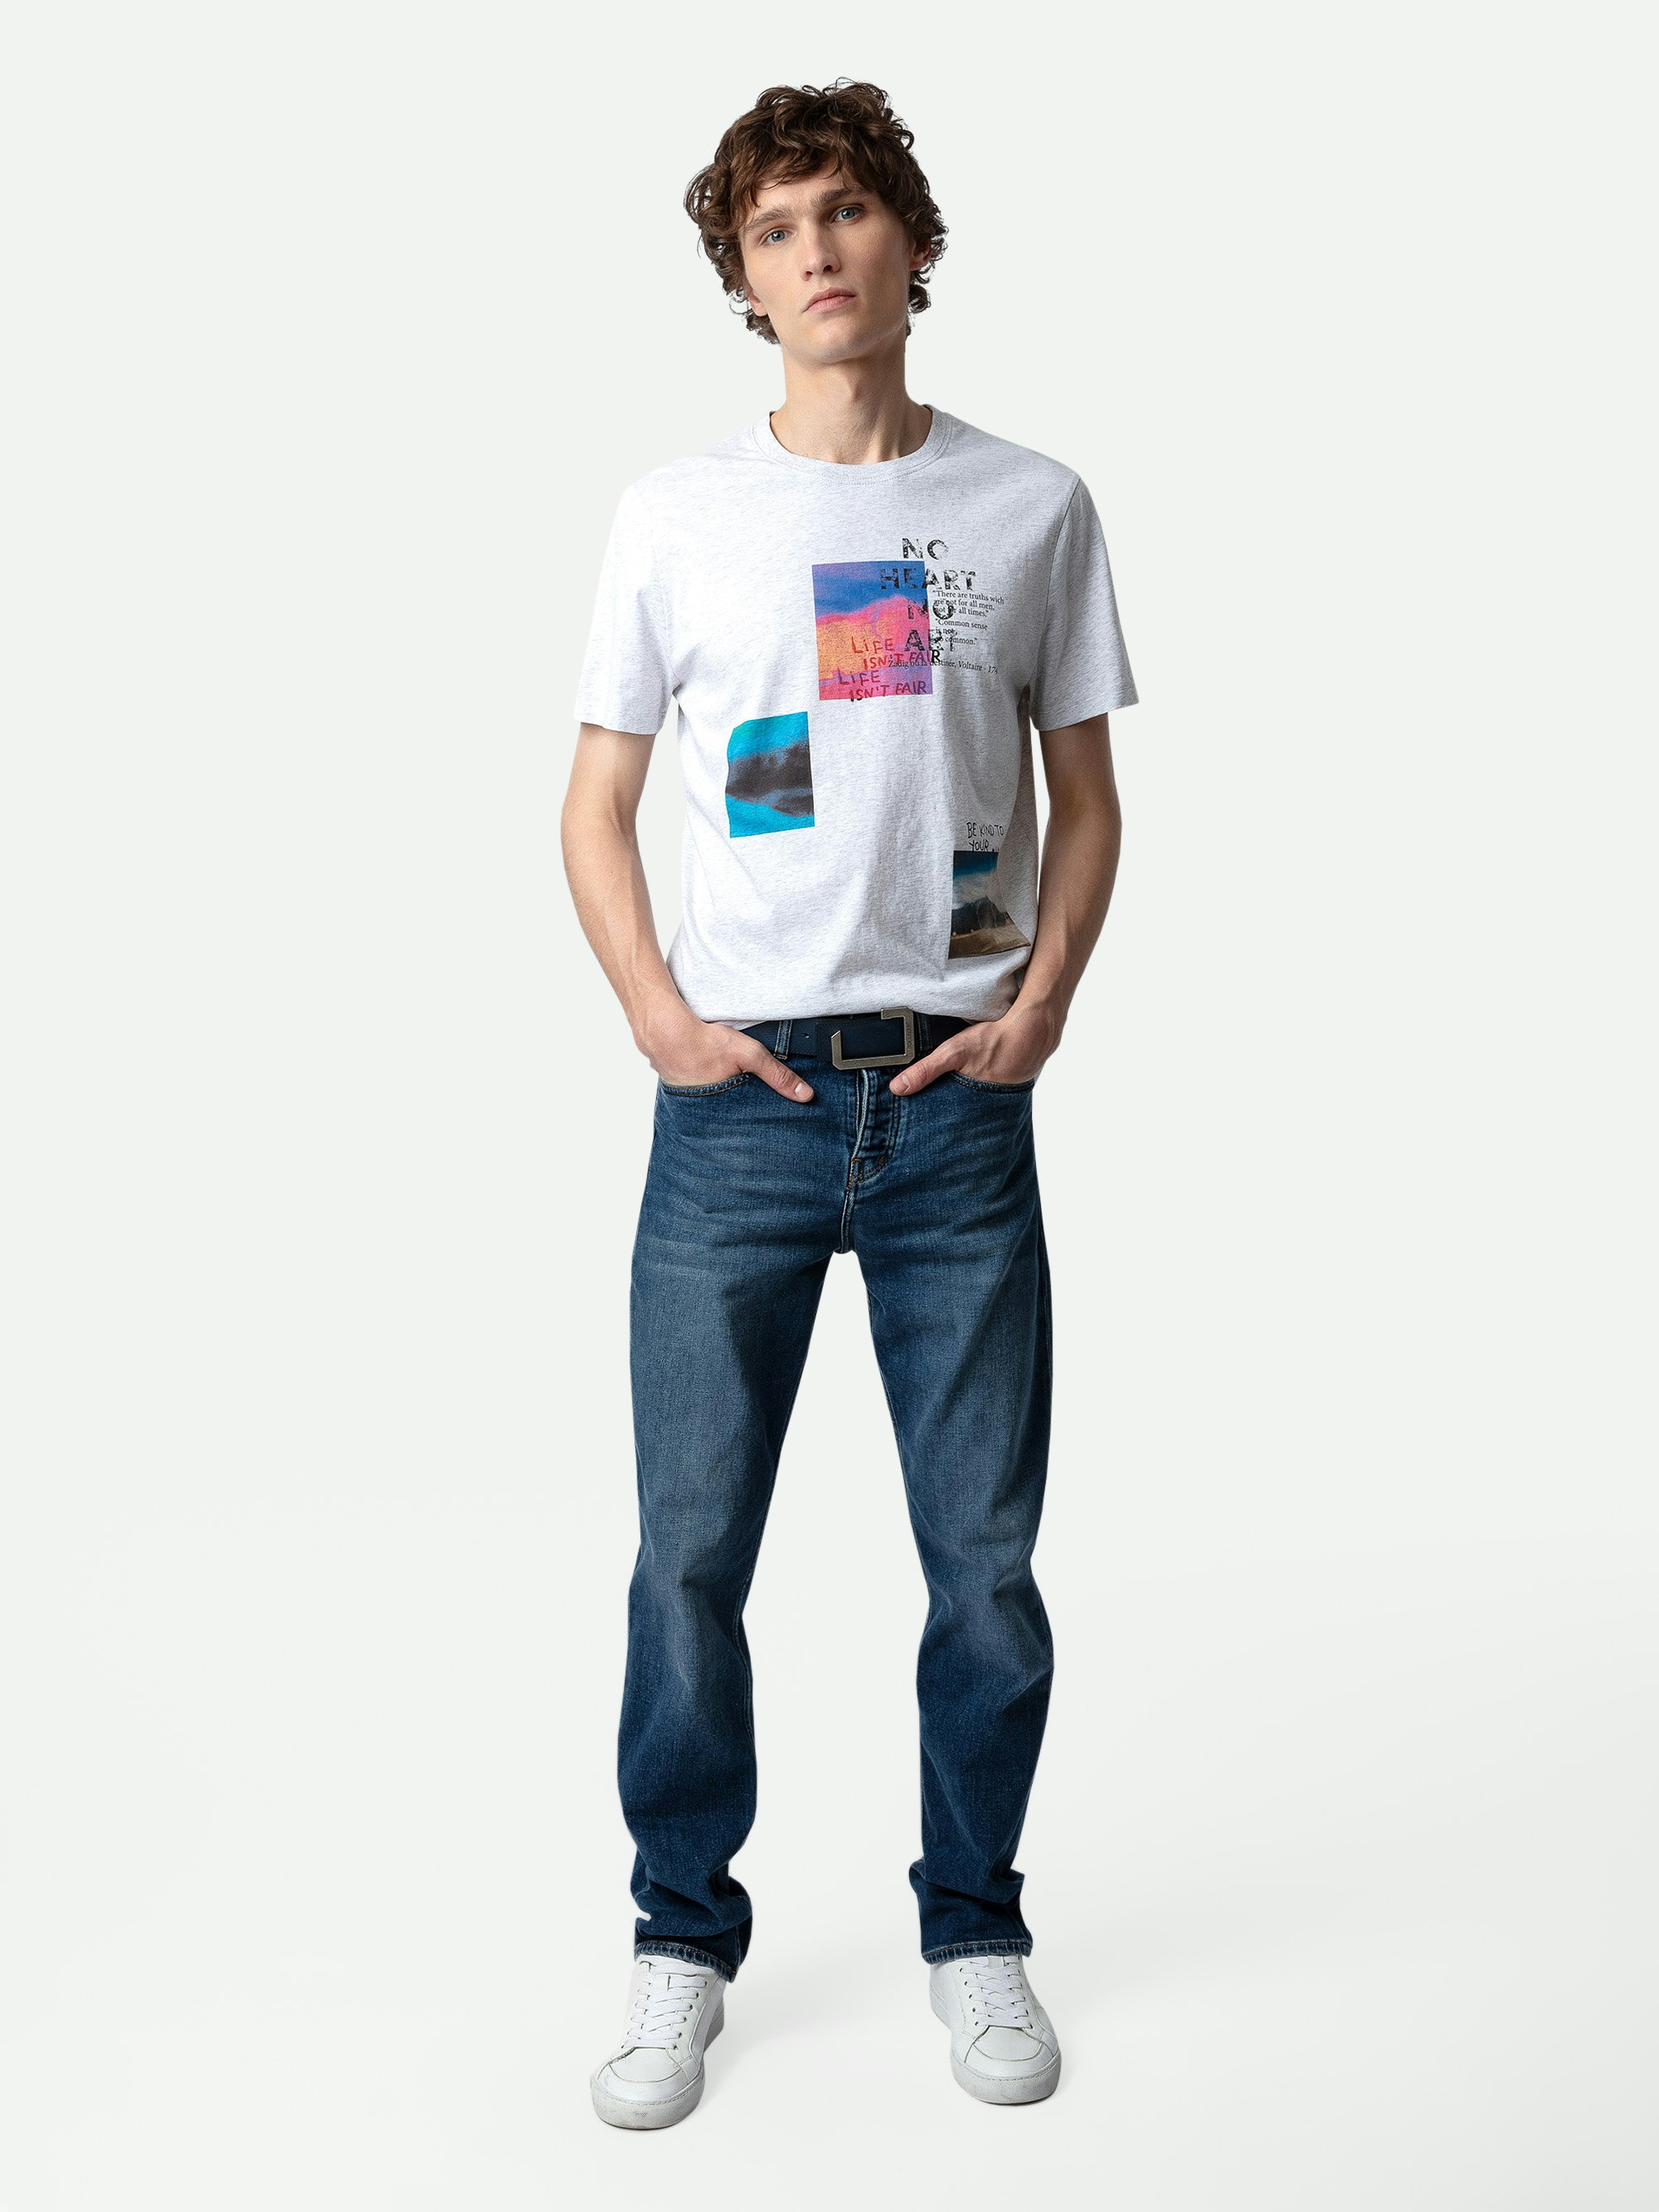 T-Shirt Ted Fotoprint - Hellgrau meliertes T-Shirt aus Baumwolle mit Rundhalsausschnitt mit Multiposter-Fotoprint.